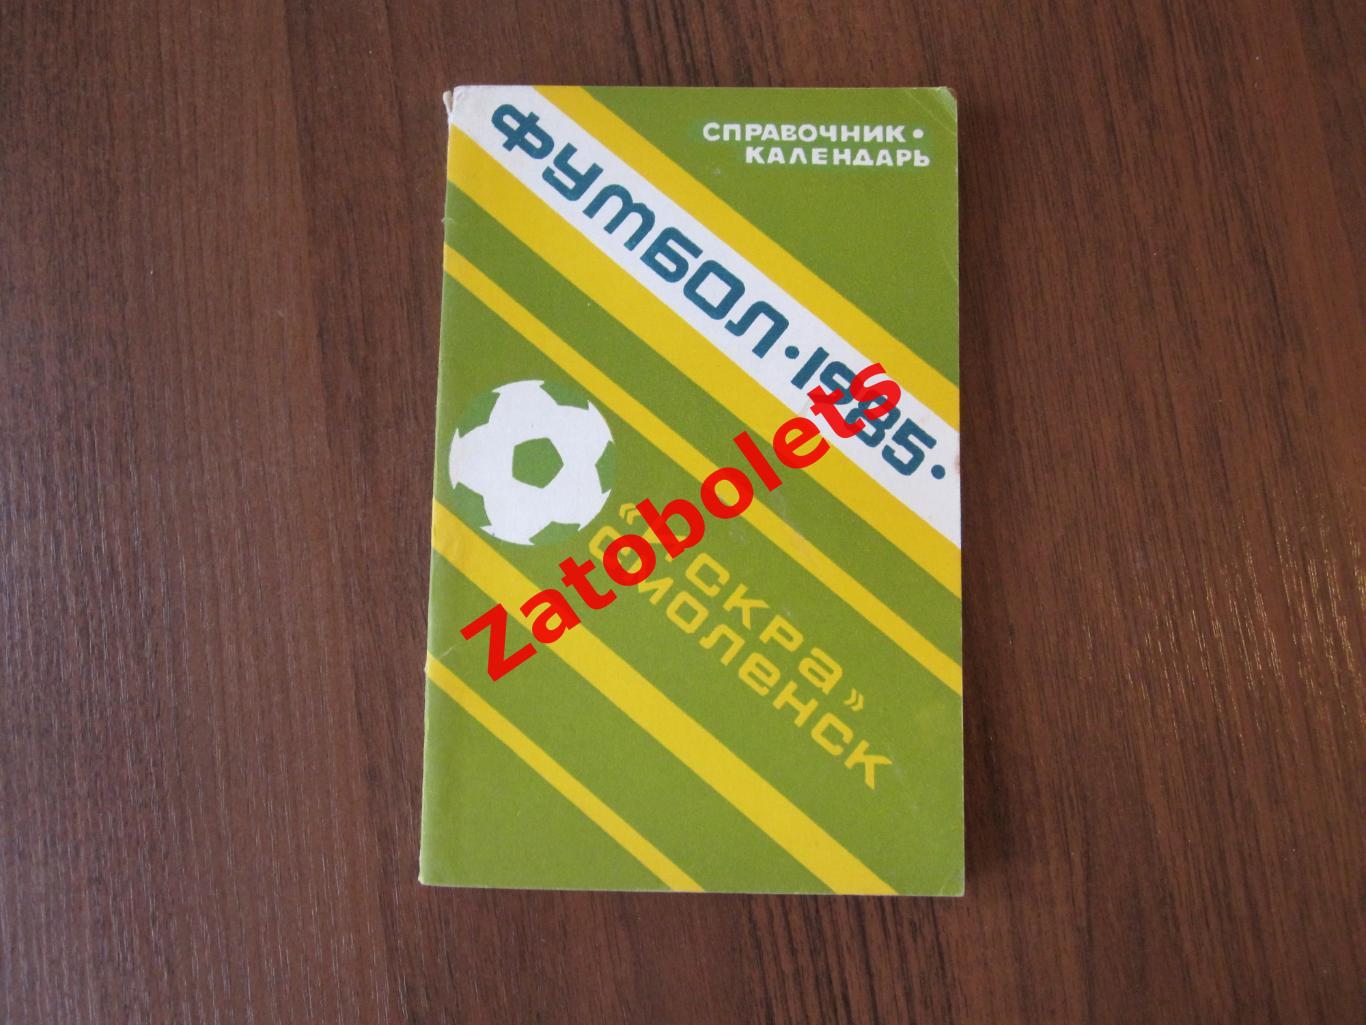 Футбол Календарь-справочник Искра Смоленск 1985